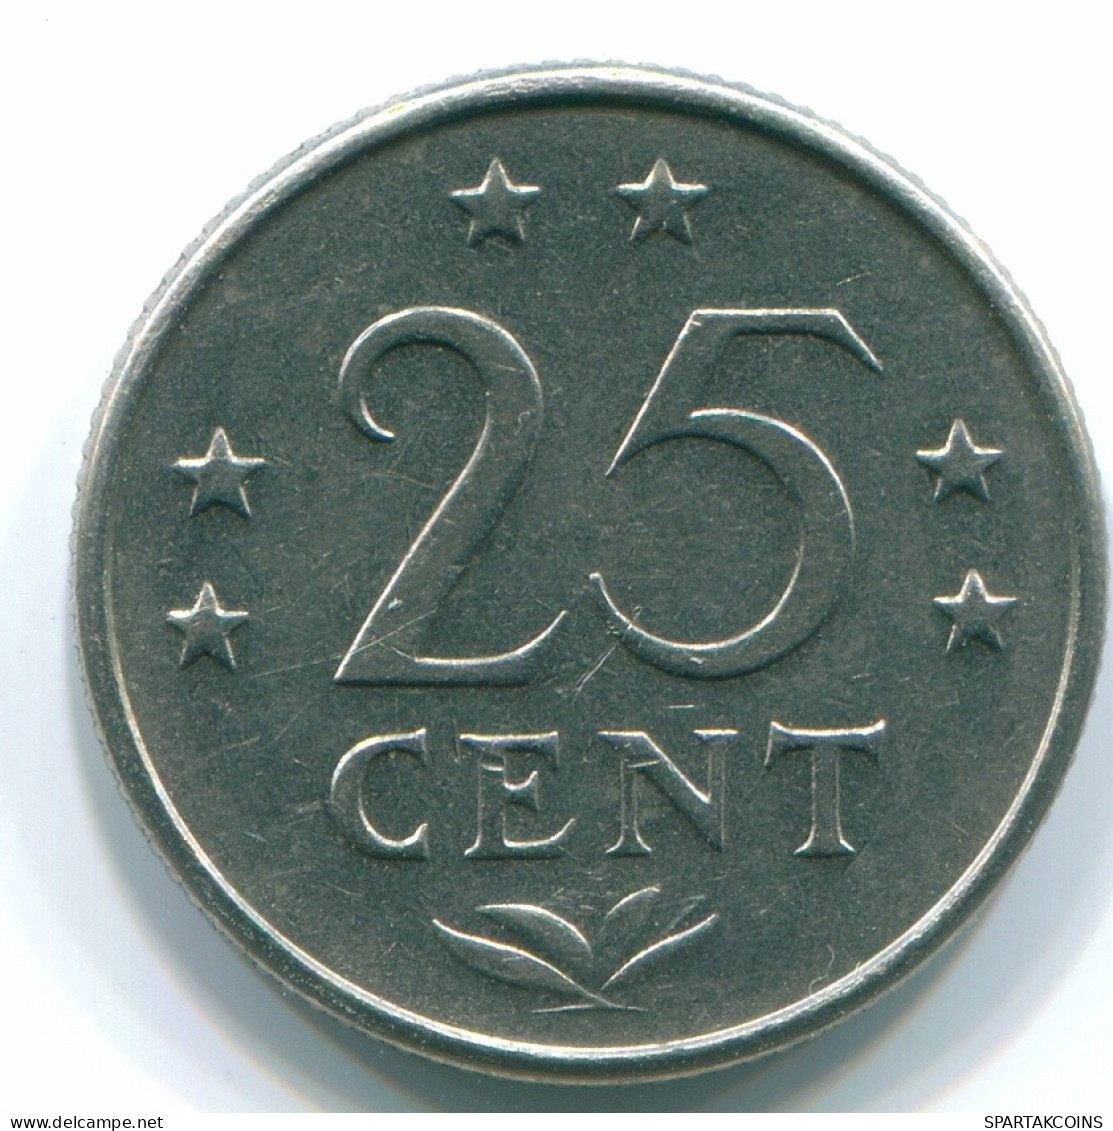 25 CENTS 1970 NETHERLANDS ANTILLES Nickel Colonial Coin #S11446.U.A - Niederländische Antillen